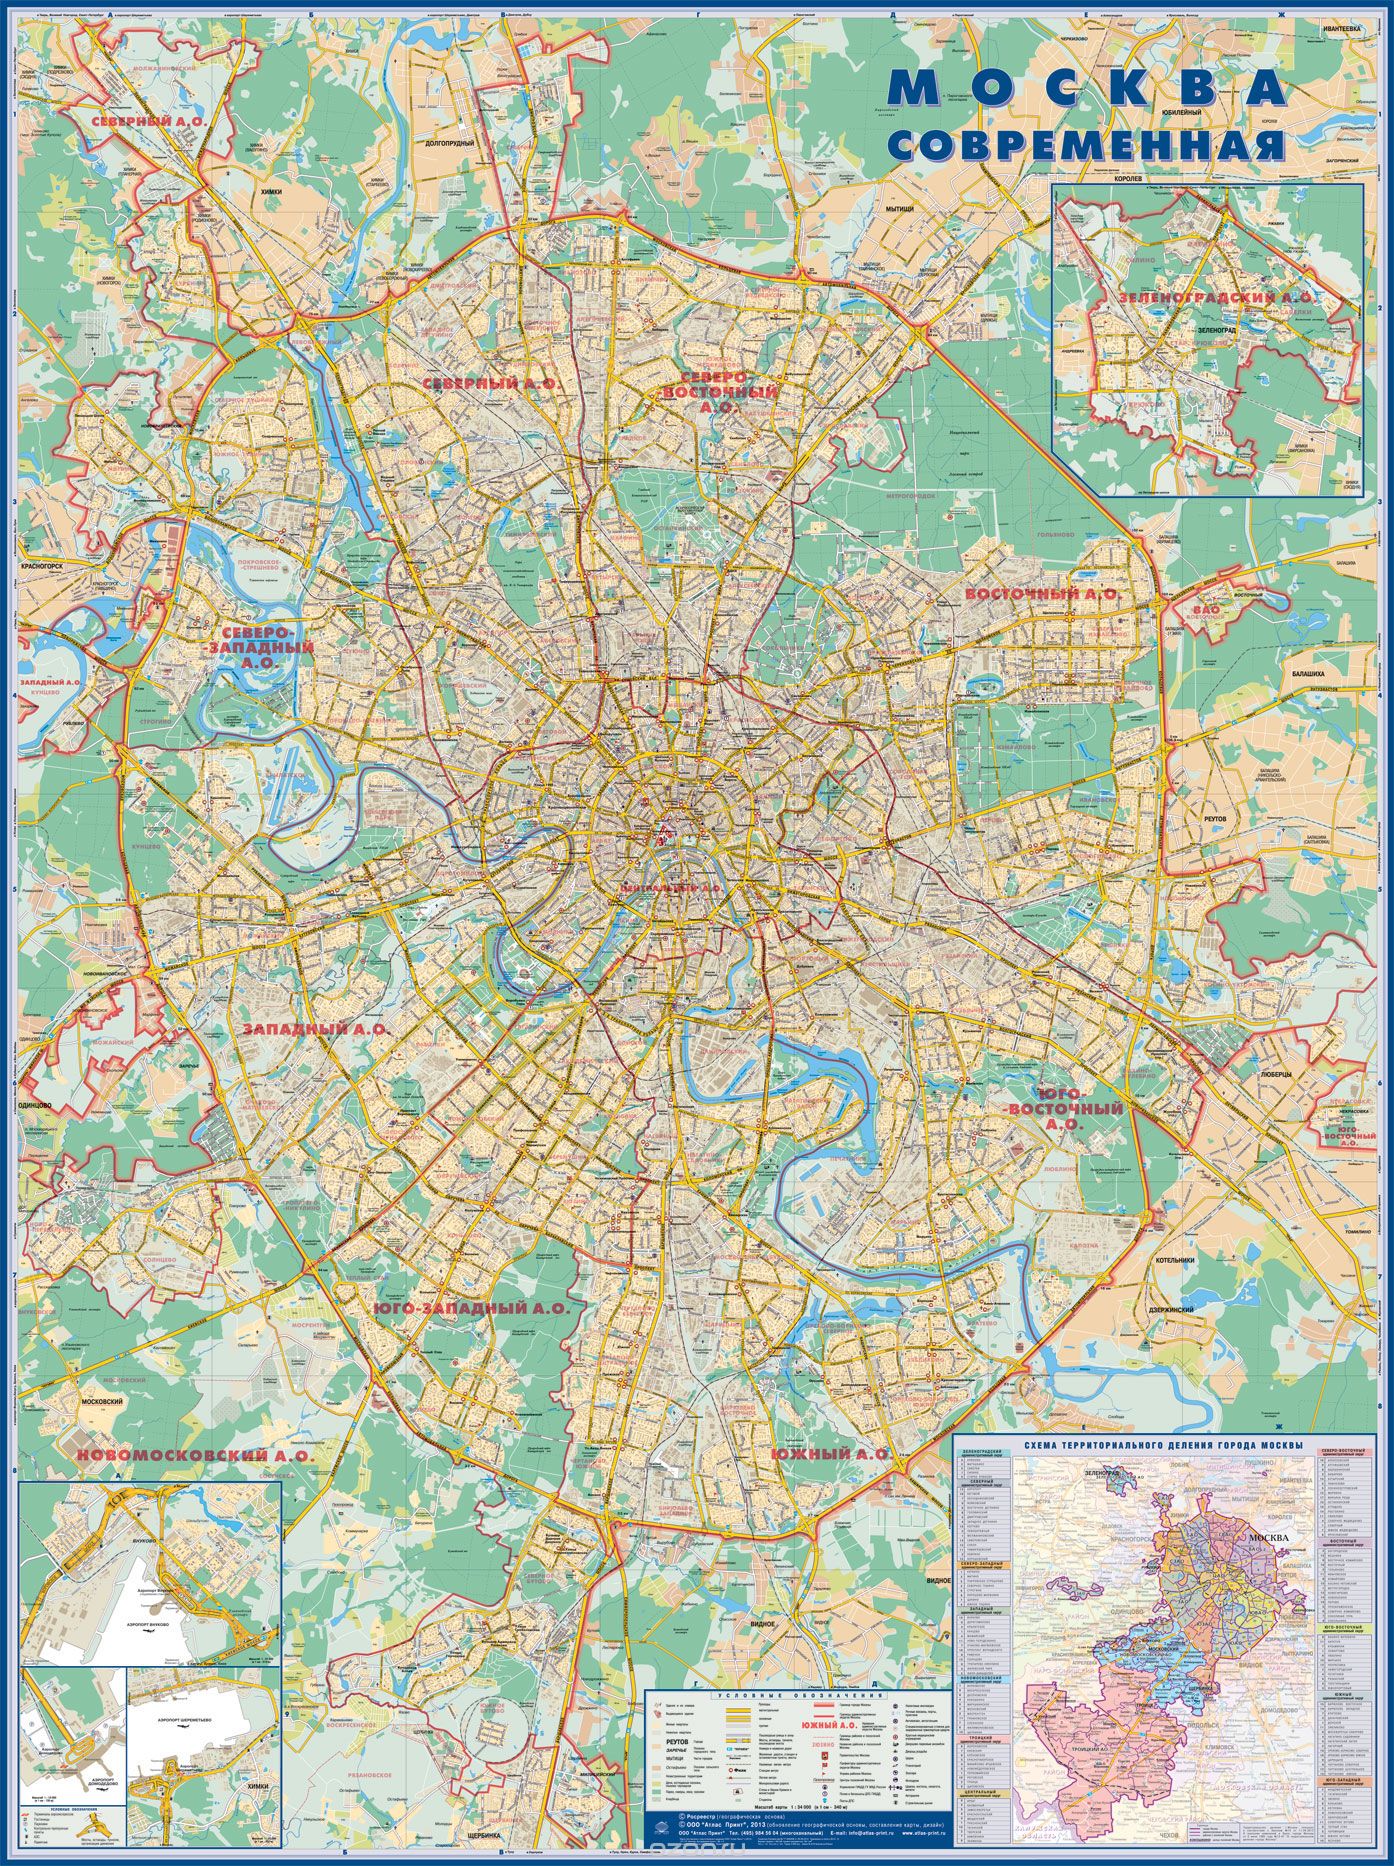 Скачать книгу "Карта современной Москвы"